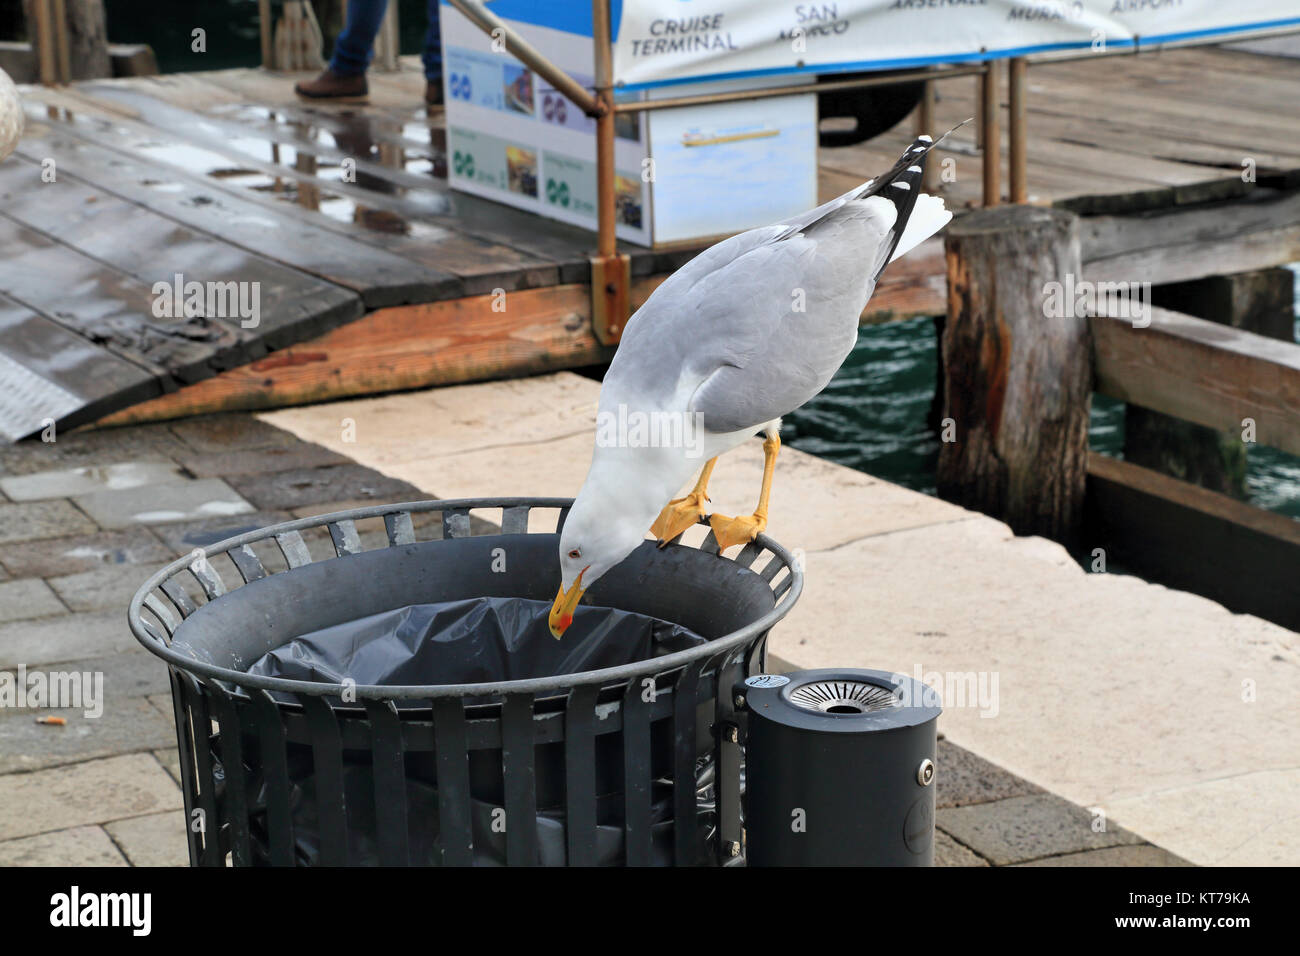 Guette à pattes jaunes (Larus michahellis) vérifiant la poubelle pour la nourriture, Venise. Plongée à benne à ordures Banque D'Images